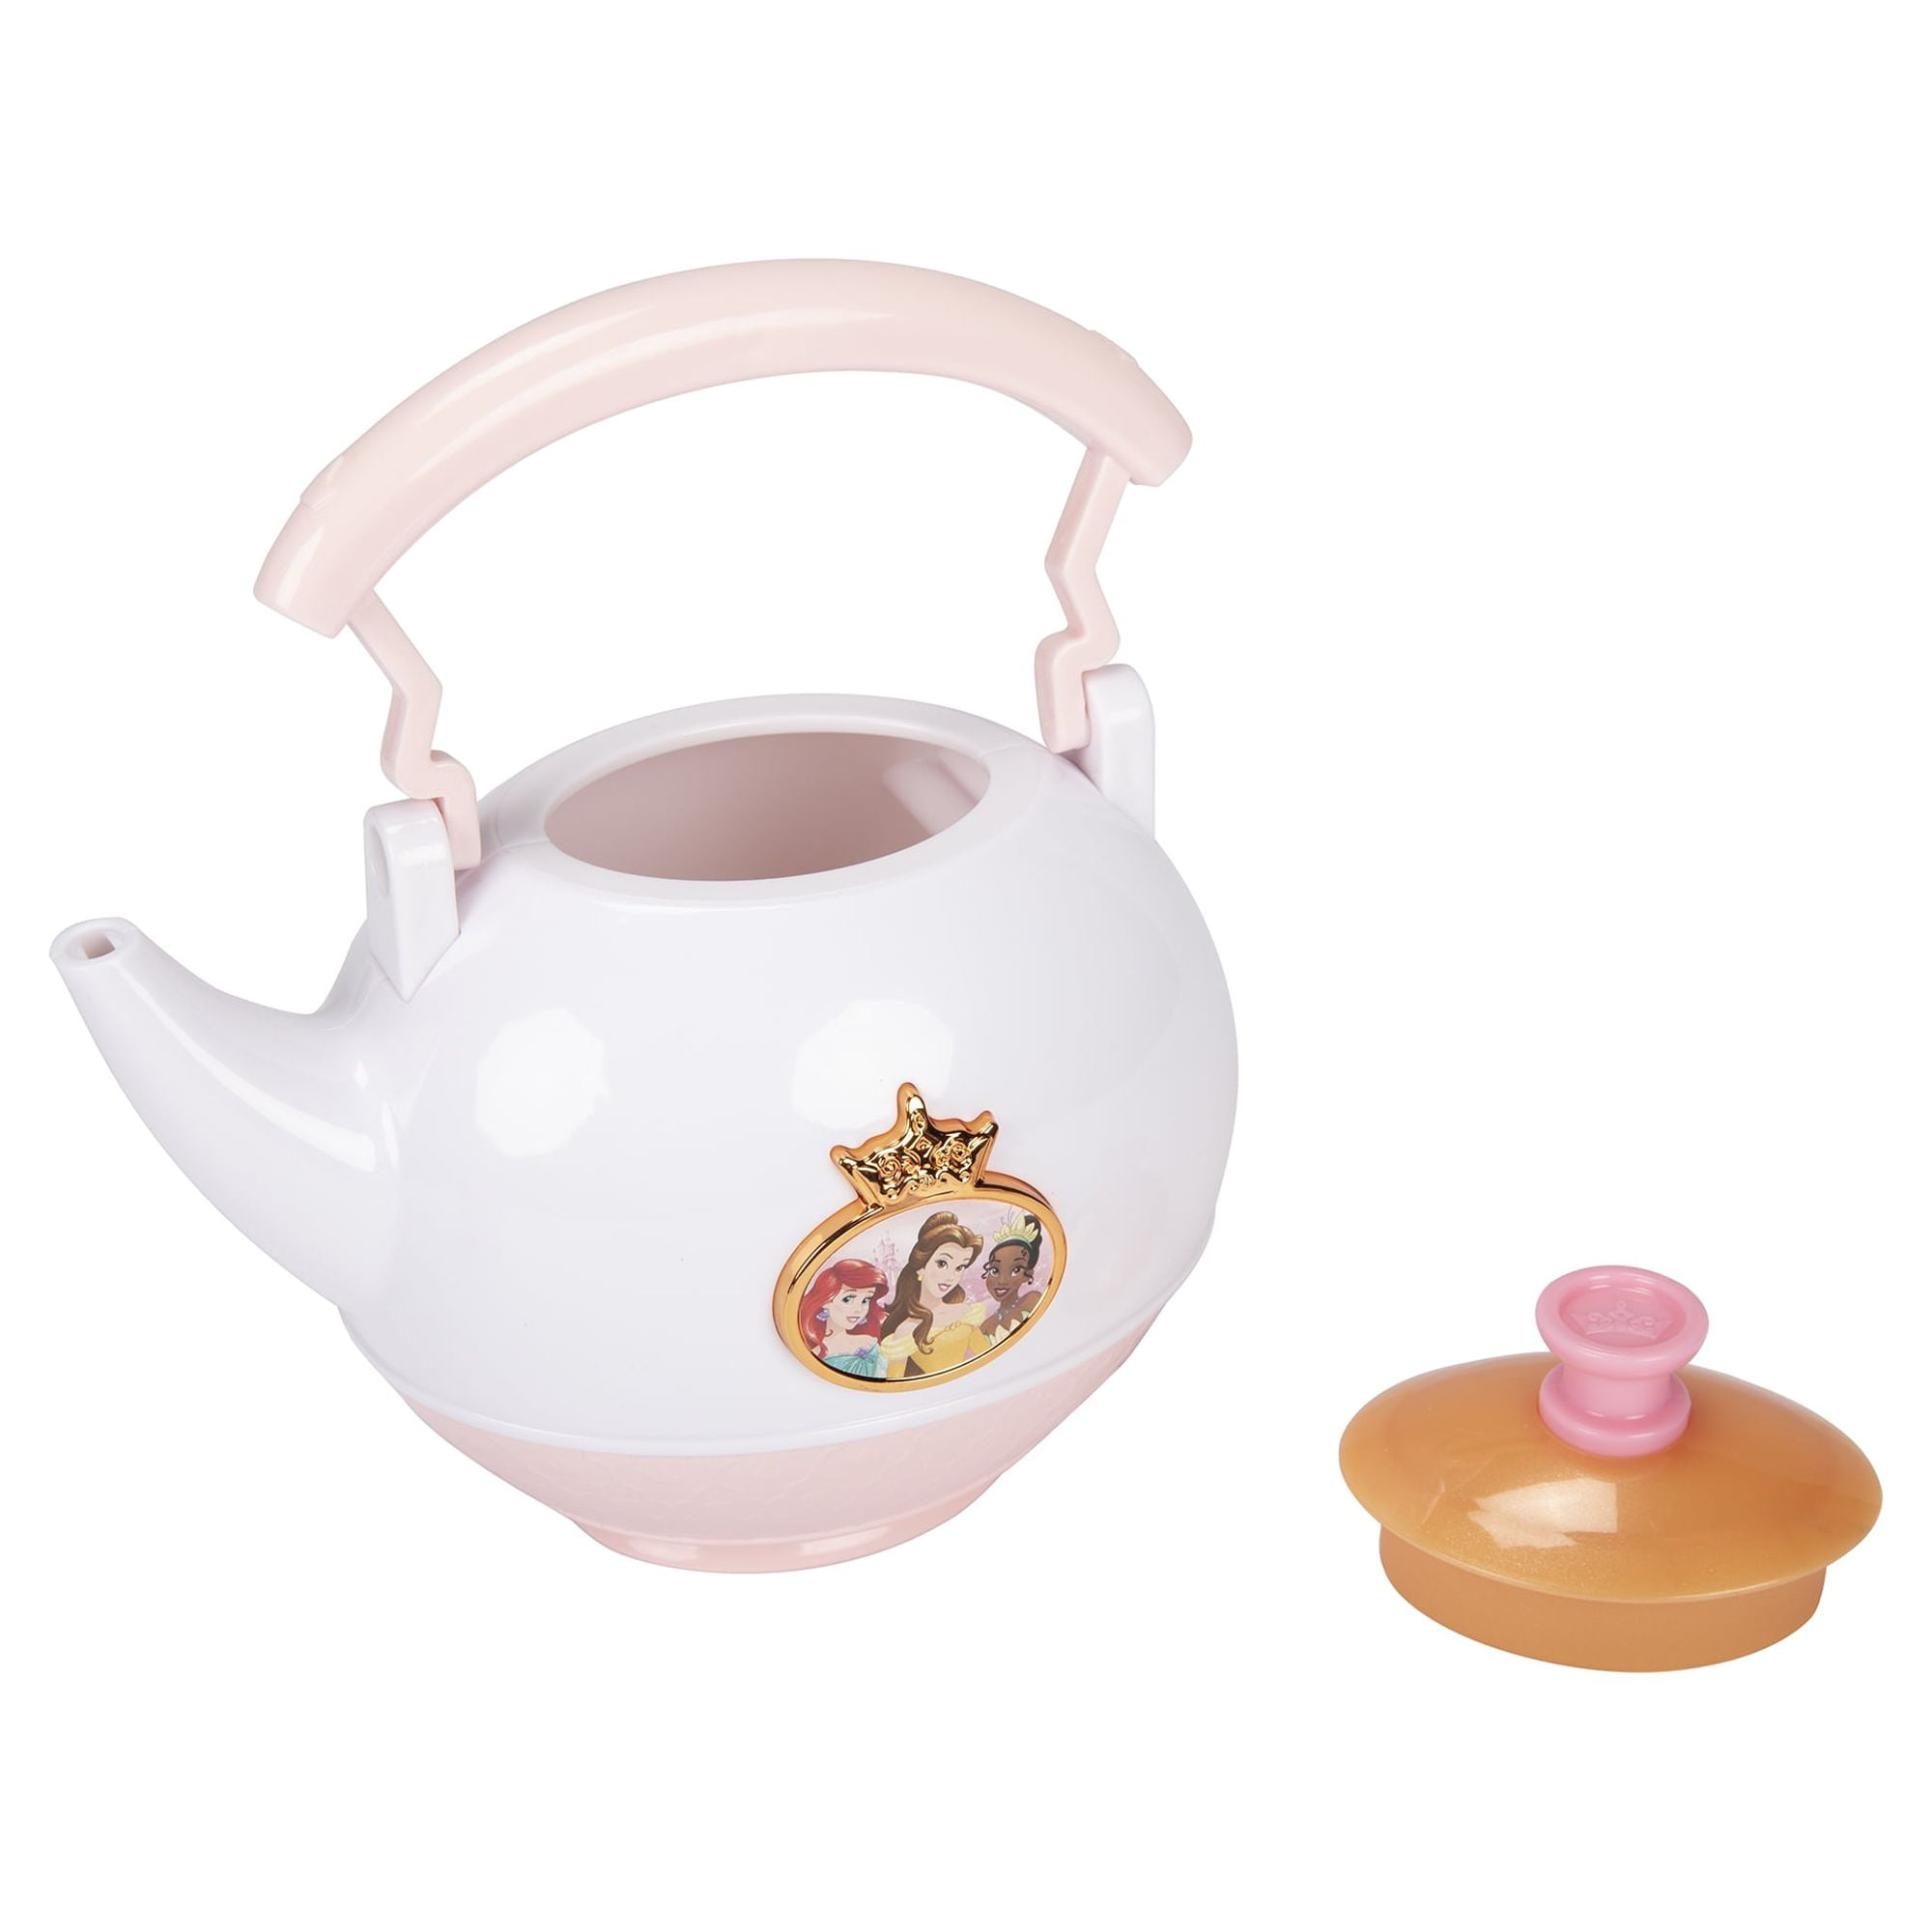 Disney Princess Magical Tea Set with Pouring Sounds 